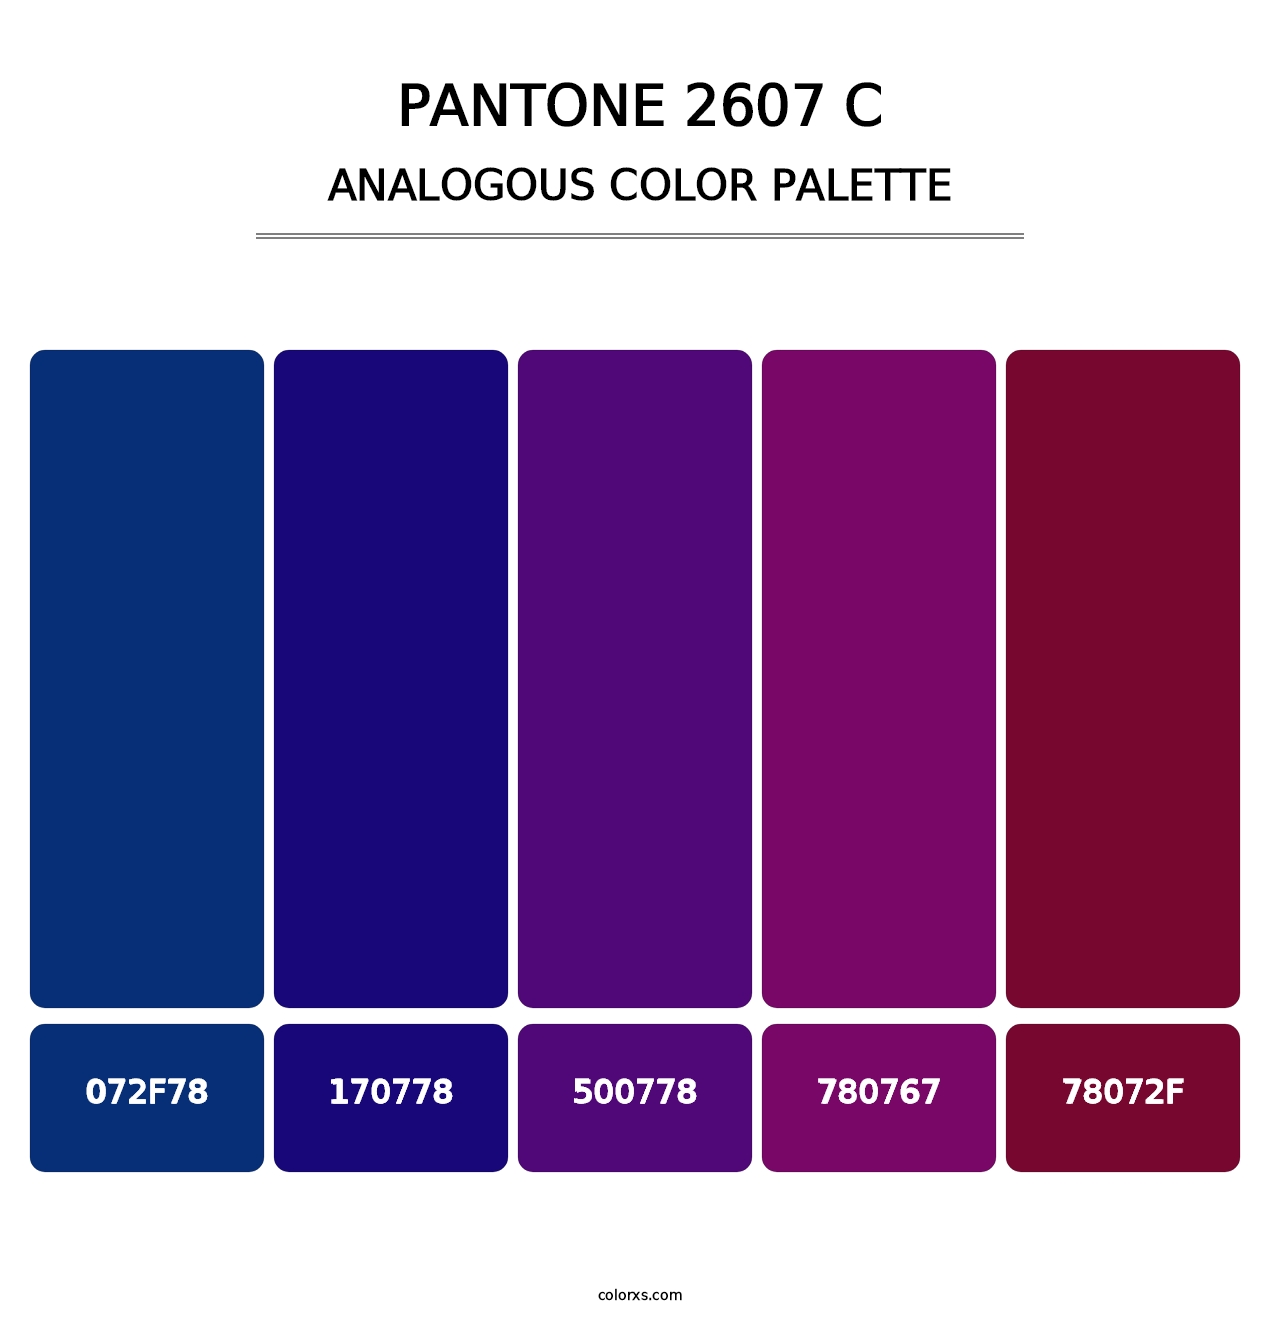 PANTONE 2607 C - Analogous Color Palette